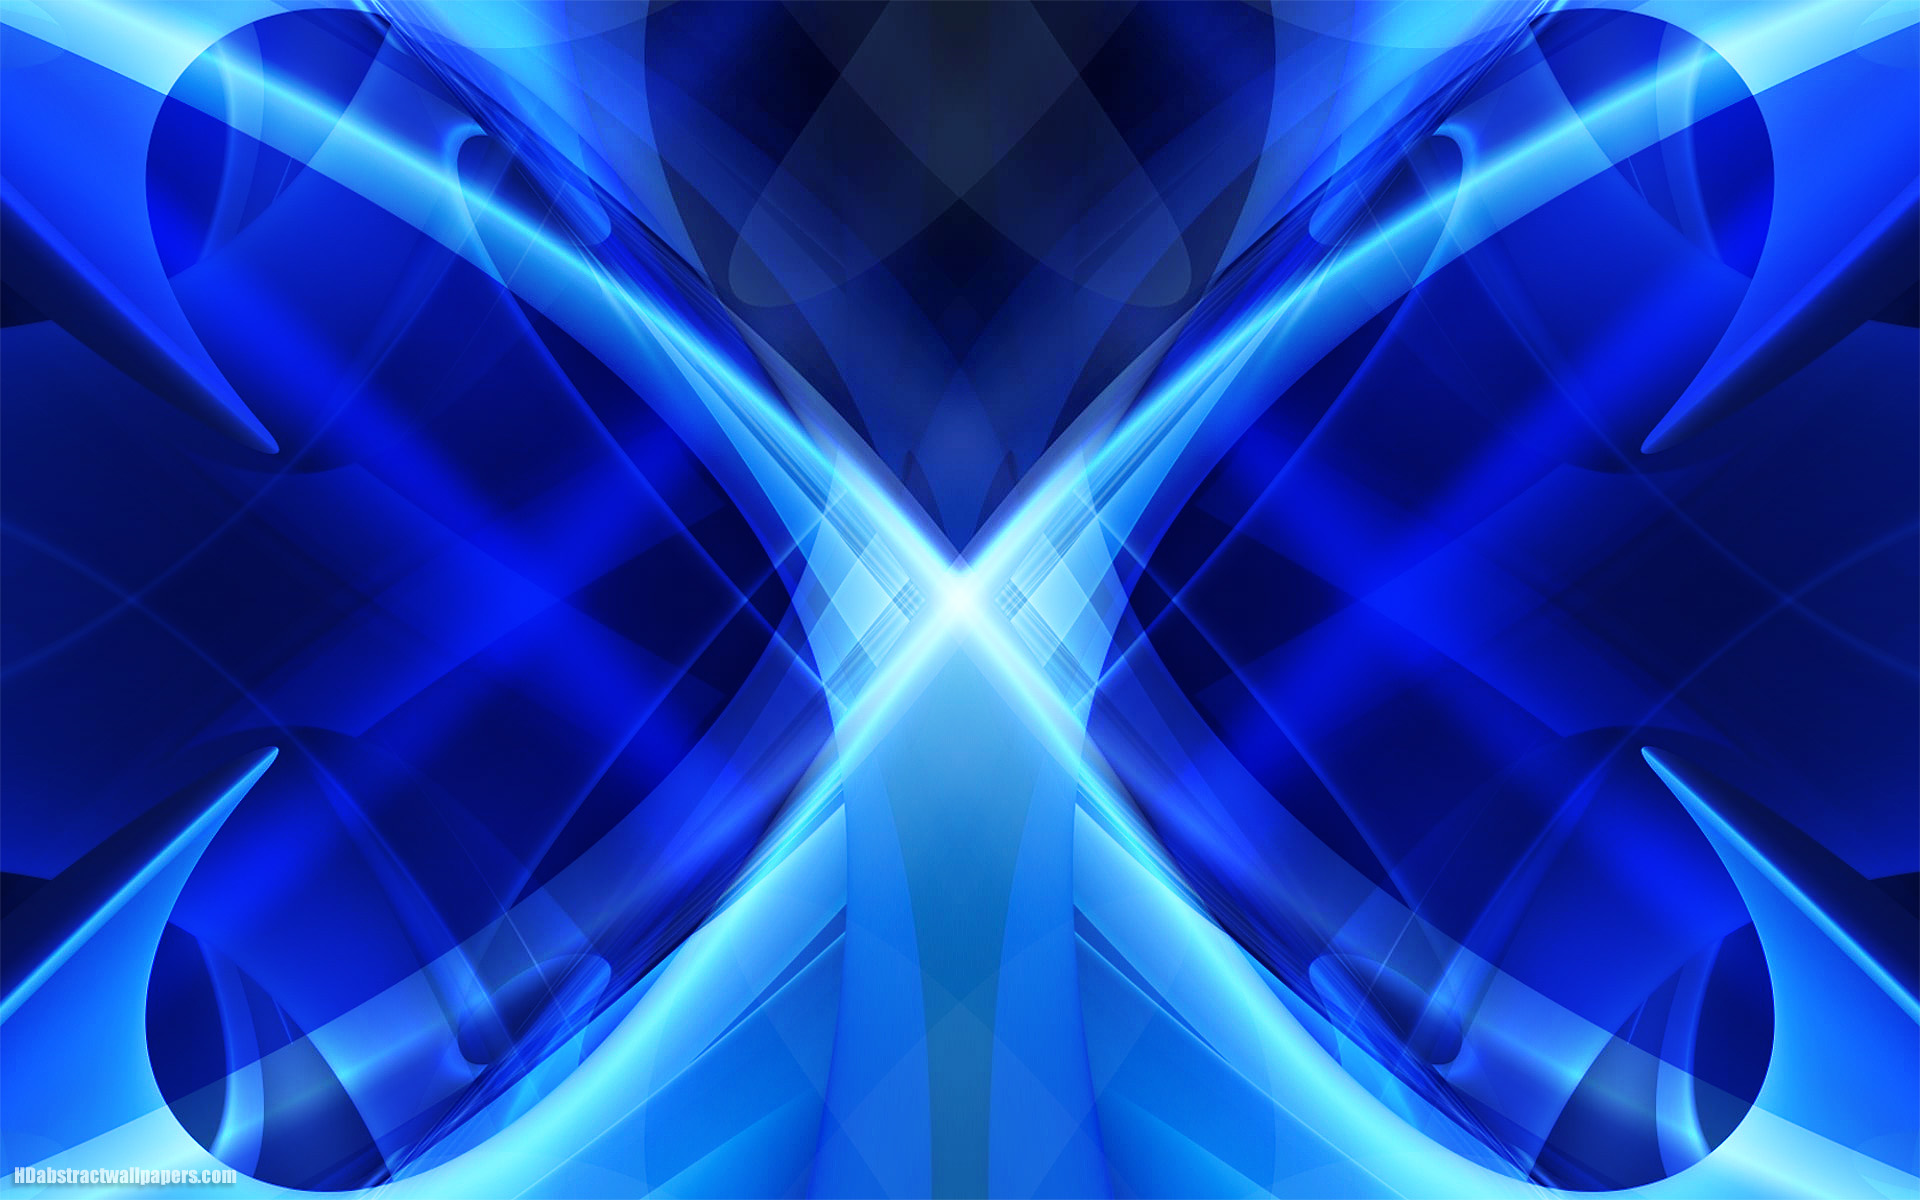 moderne blaue tapete,blau,elektrisches blau,kobaltblau,licht,symmetrie